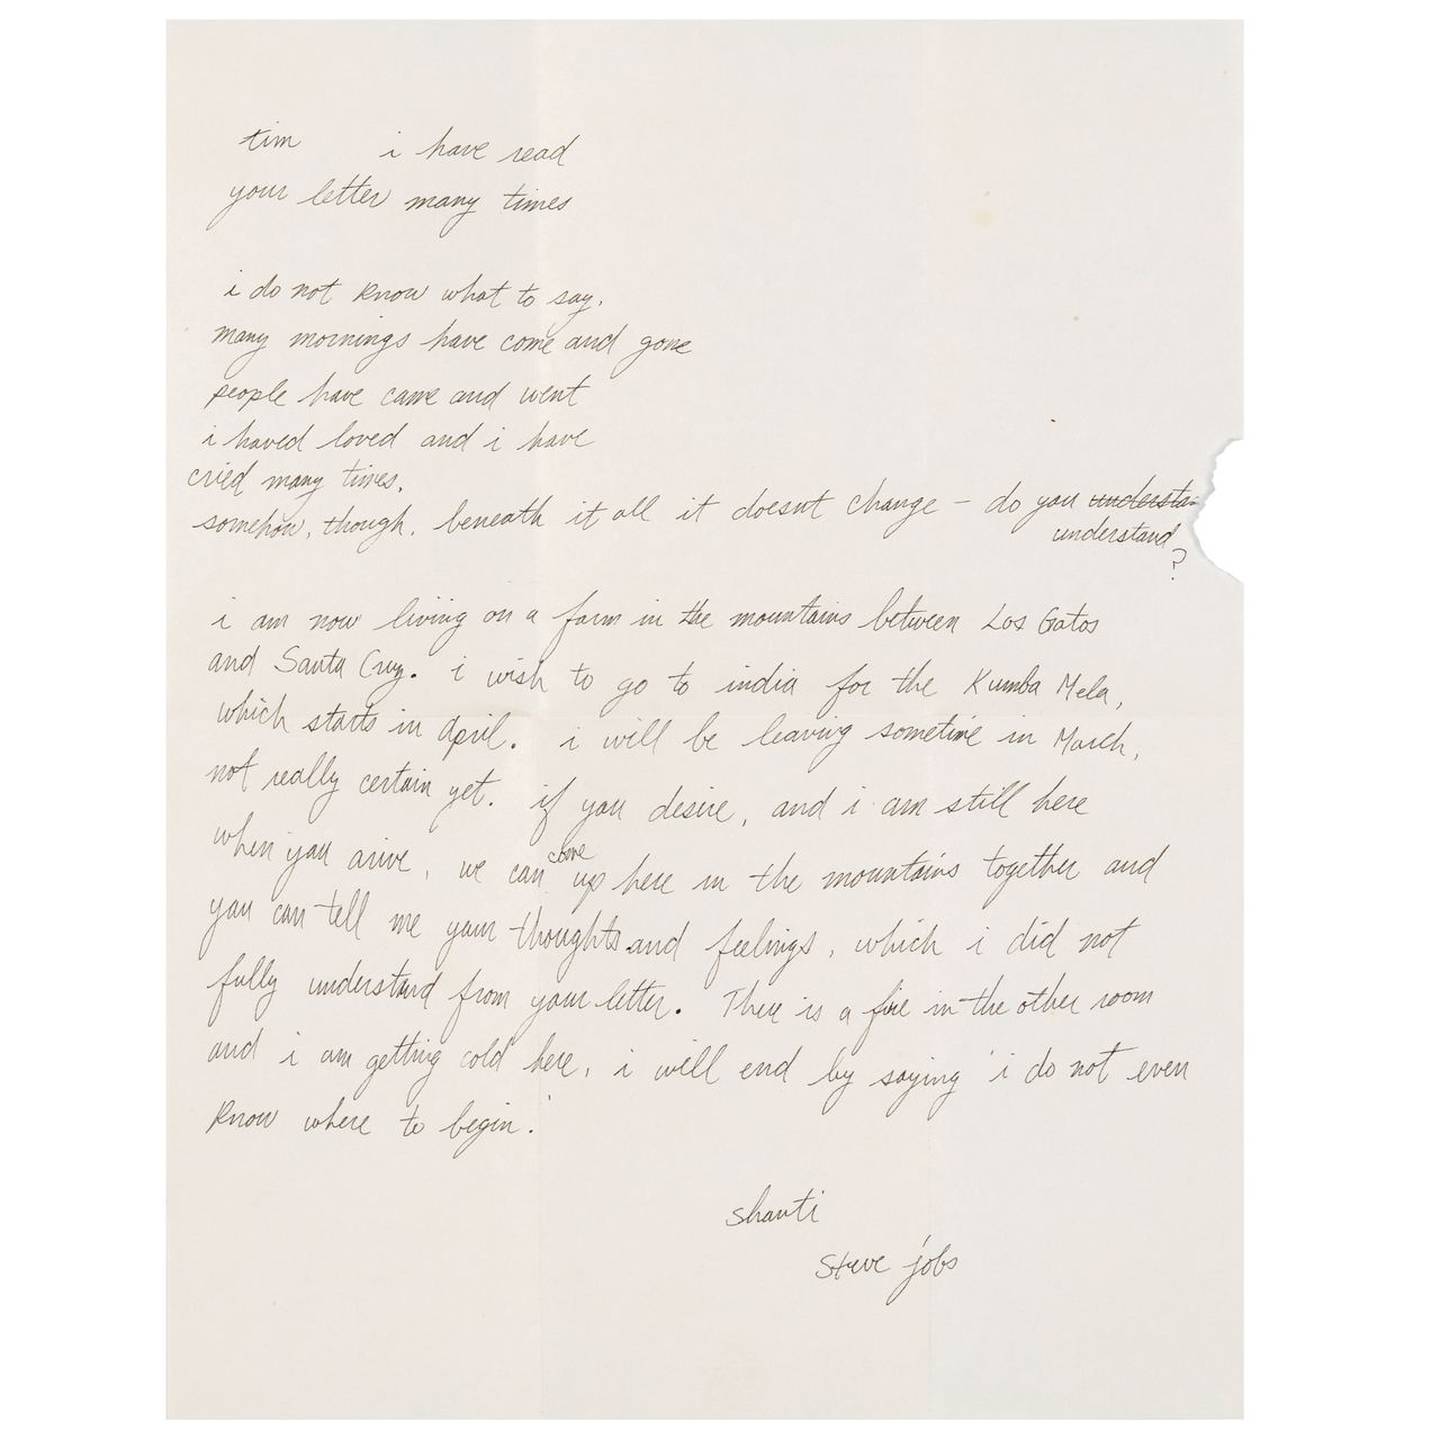 Carta manuscrita de Steve Jobs